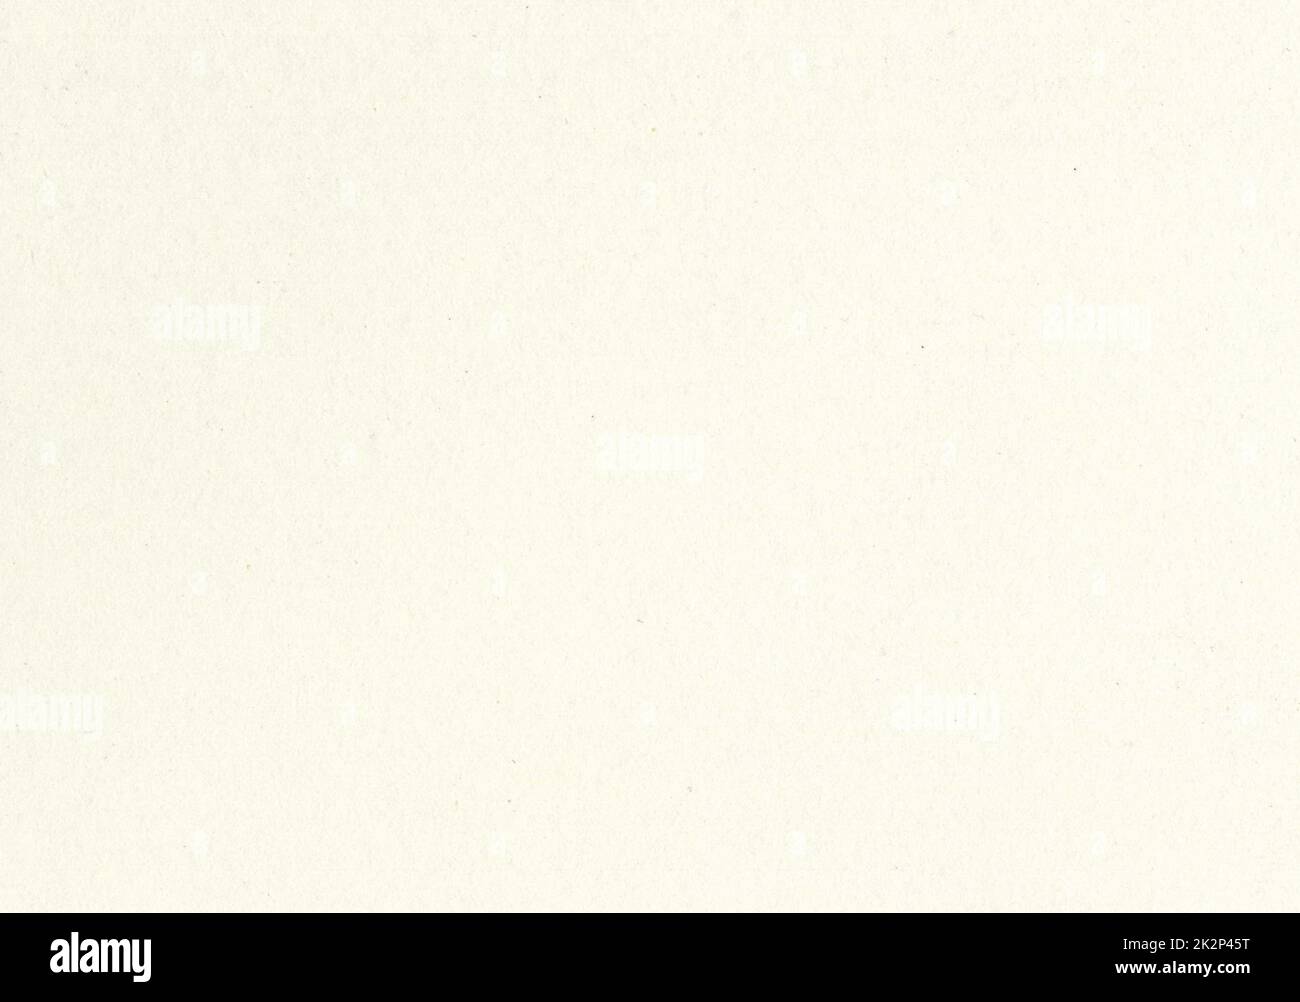 Hochauflösender Zoom Nahaufnahme altes helles Beige Papierstruktur Hintergrundscan mit feinkörniger Faser und Staubpartikeln Glättes, ungestrichenes, gealtertes Papier für Tapeten und Materialmodelle Stockfoto